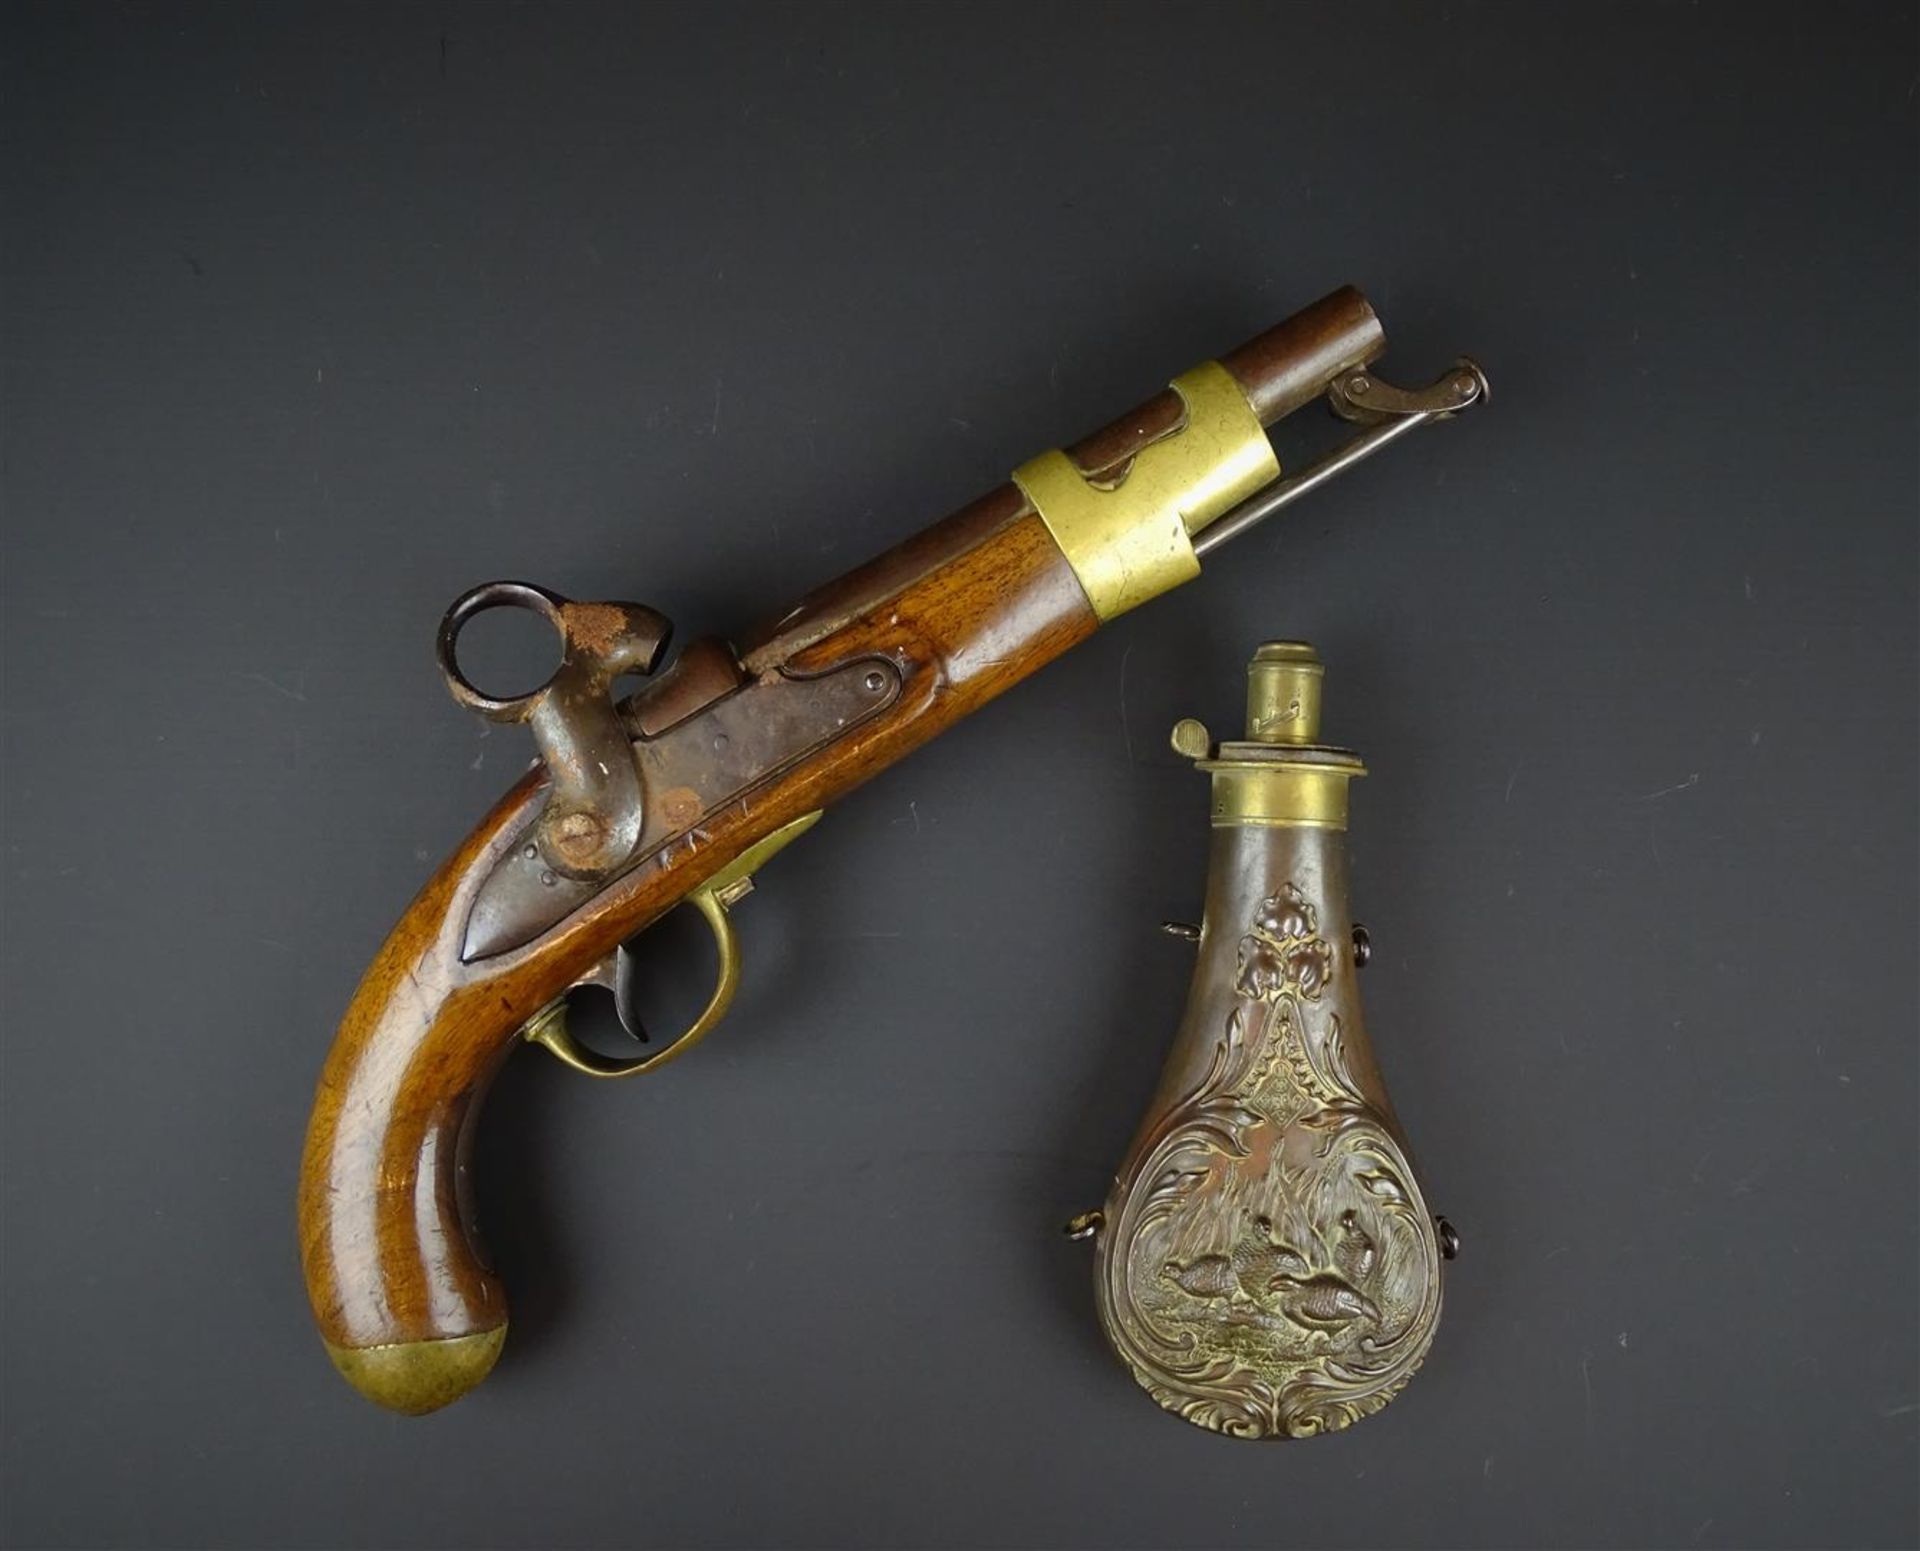 militair percussiepistool met kruithoorn, 19e eeuw- - -29.00 % buyer's premium on the hammer